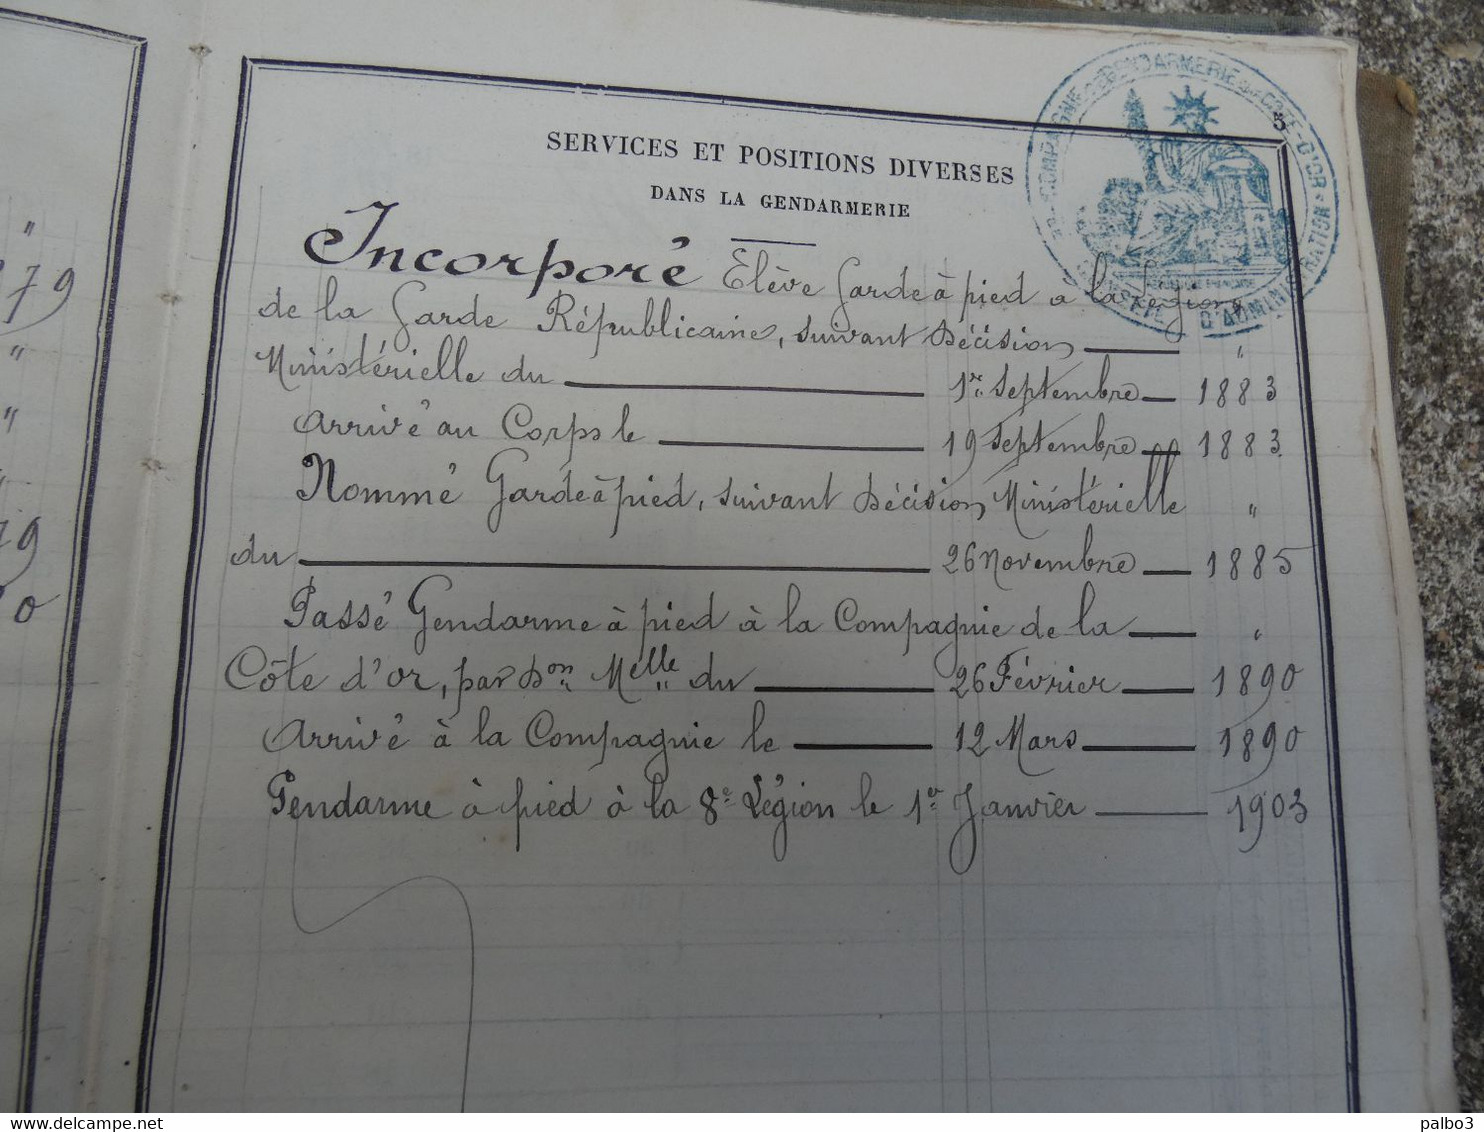 8 eme Legion Gendarmerie Nationale et Garde Republicaine Lot de 2 Livret Individuel de Gendarme 1883 et 1890 cote d'or